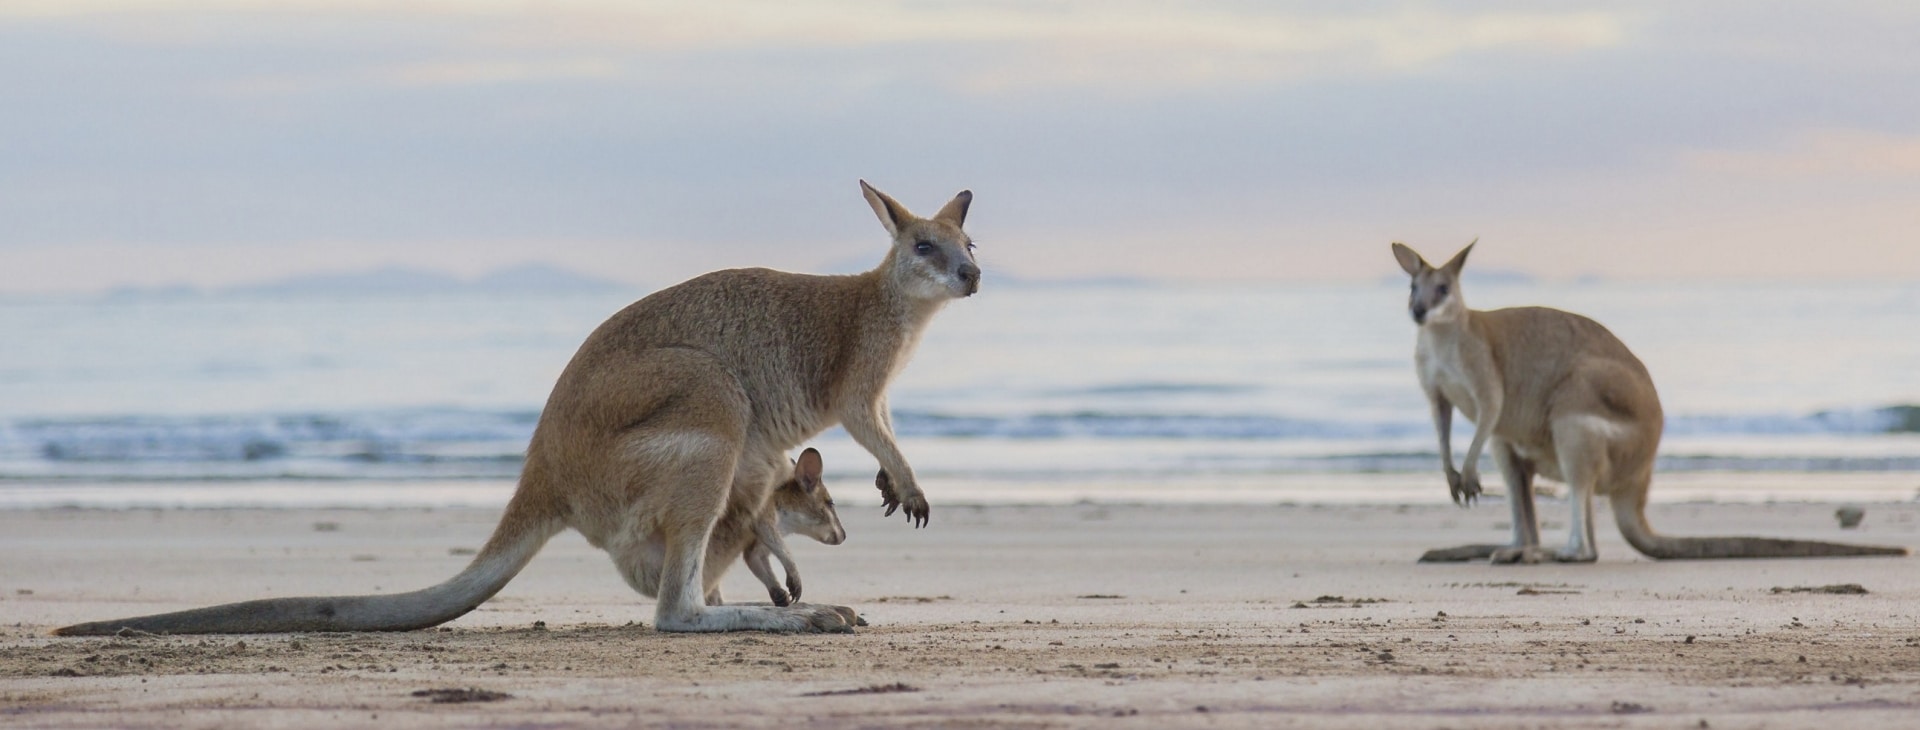 日落時分在希爾斯伯勒角國家公園海灘上的袋鼠©昆士蘭旅遊及活動推廣局